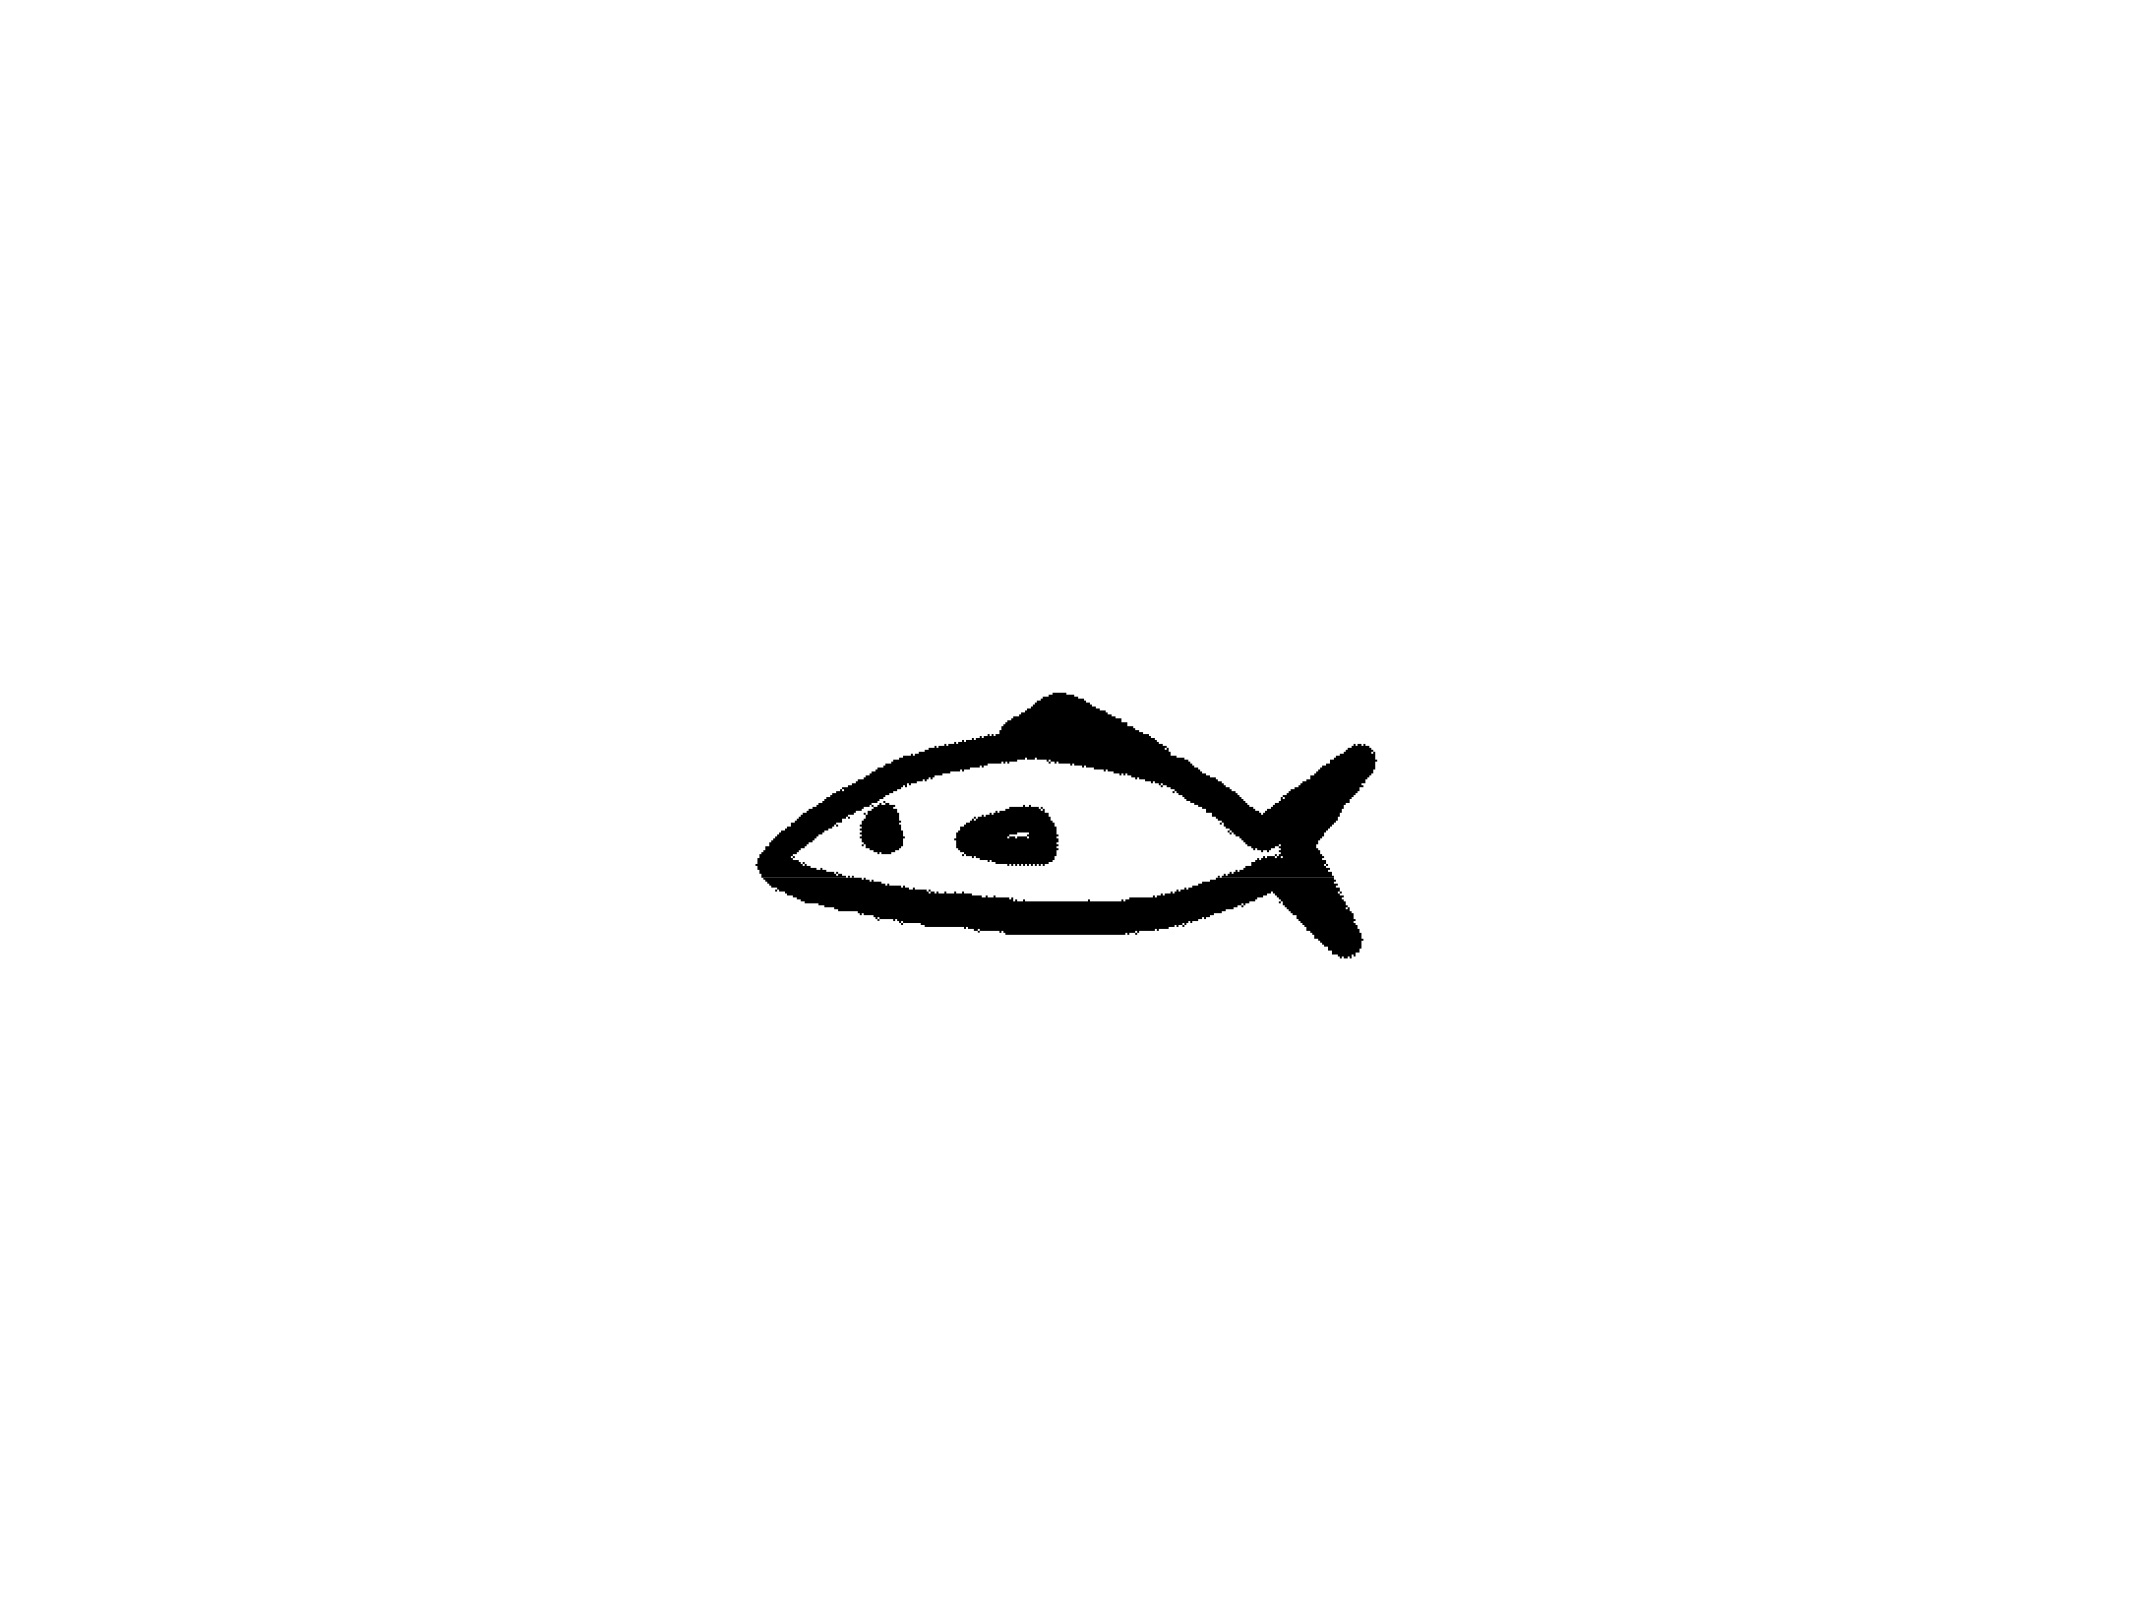 上小魚 イラスト 最高の動物画像